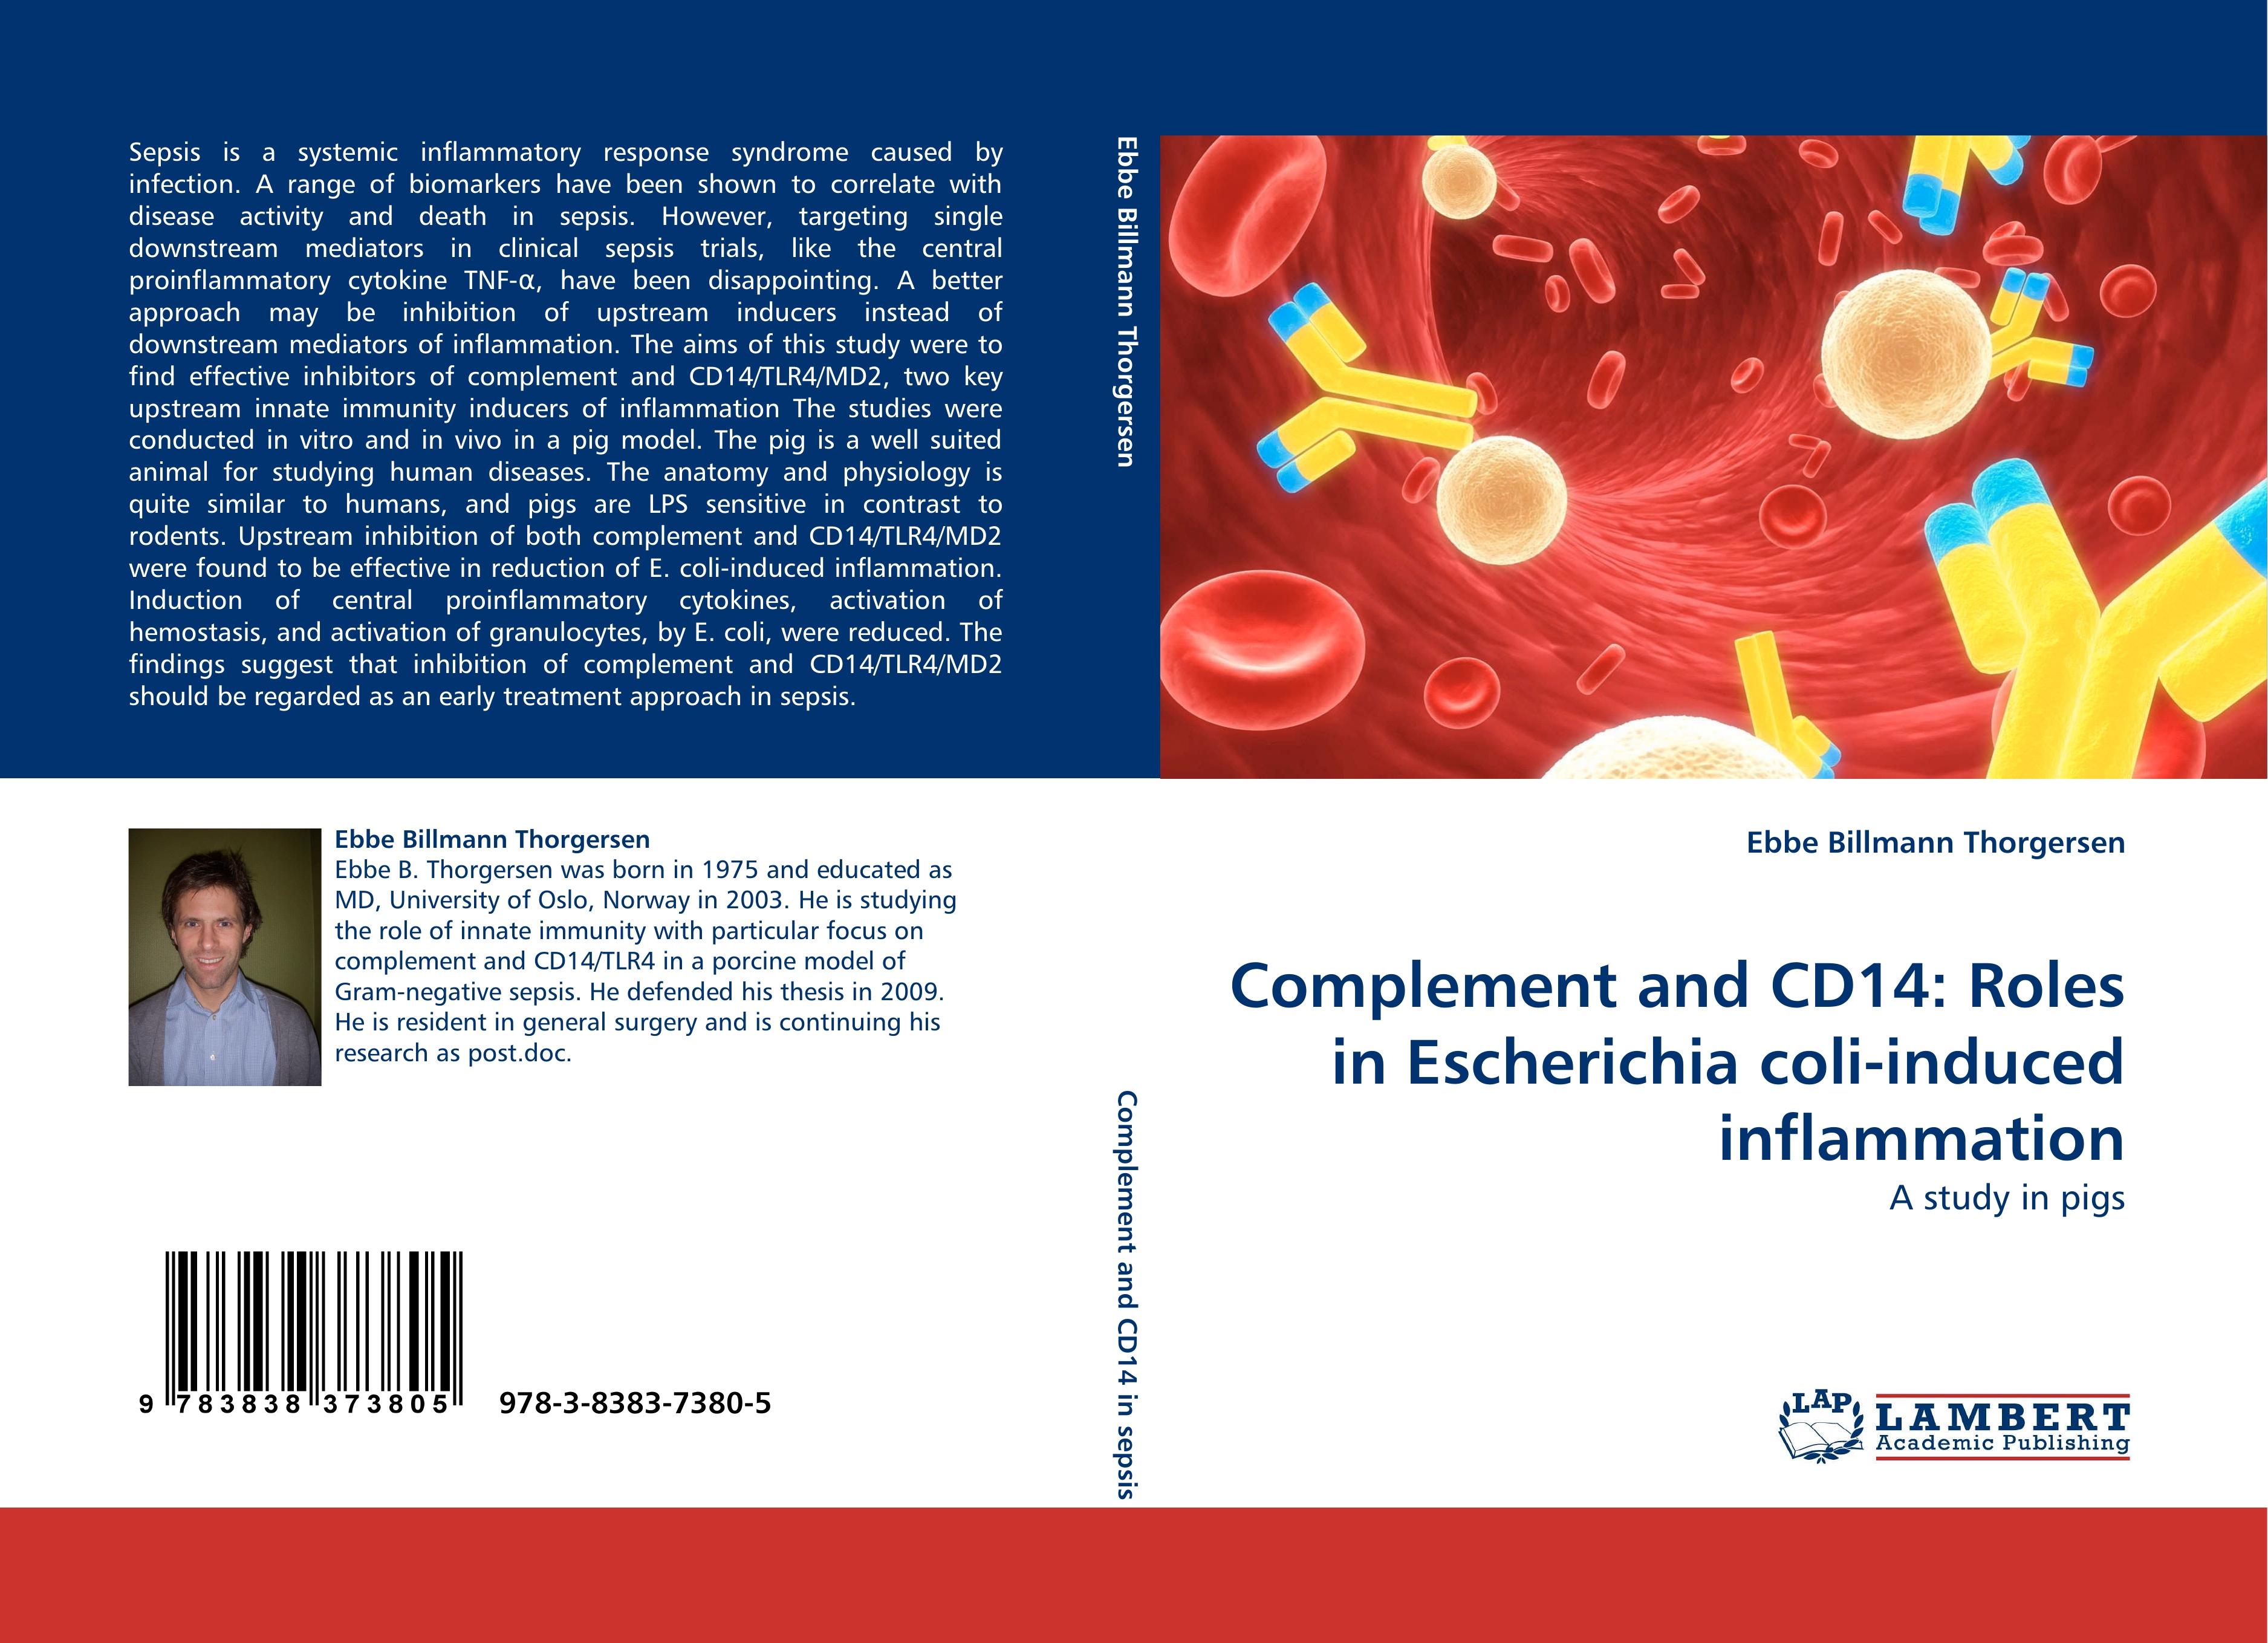 Complement and CD14: Roles in Escherichia coli-induced inflammation / A study in pigs / Ebbe Billmann Thorgersen / Taschenbuch / Paperback / 124 S. / Englisch / 2010 / LAP LAMBERT Academic Publishing - Thorgersen, Ebbe Billmann